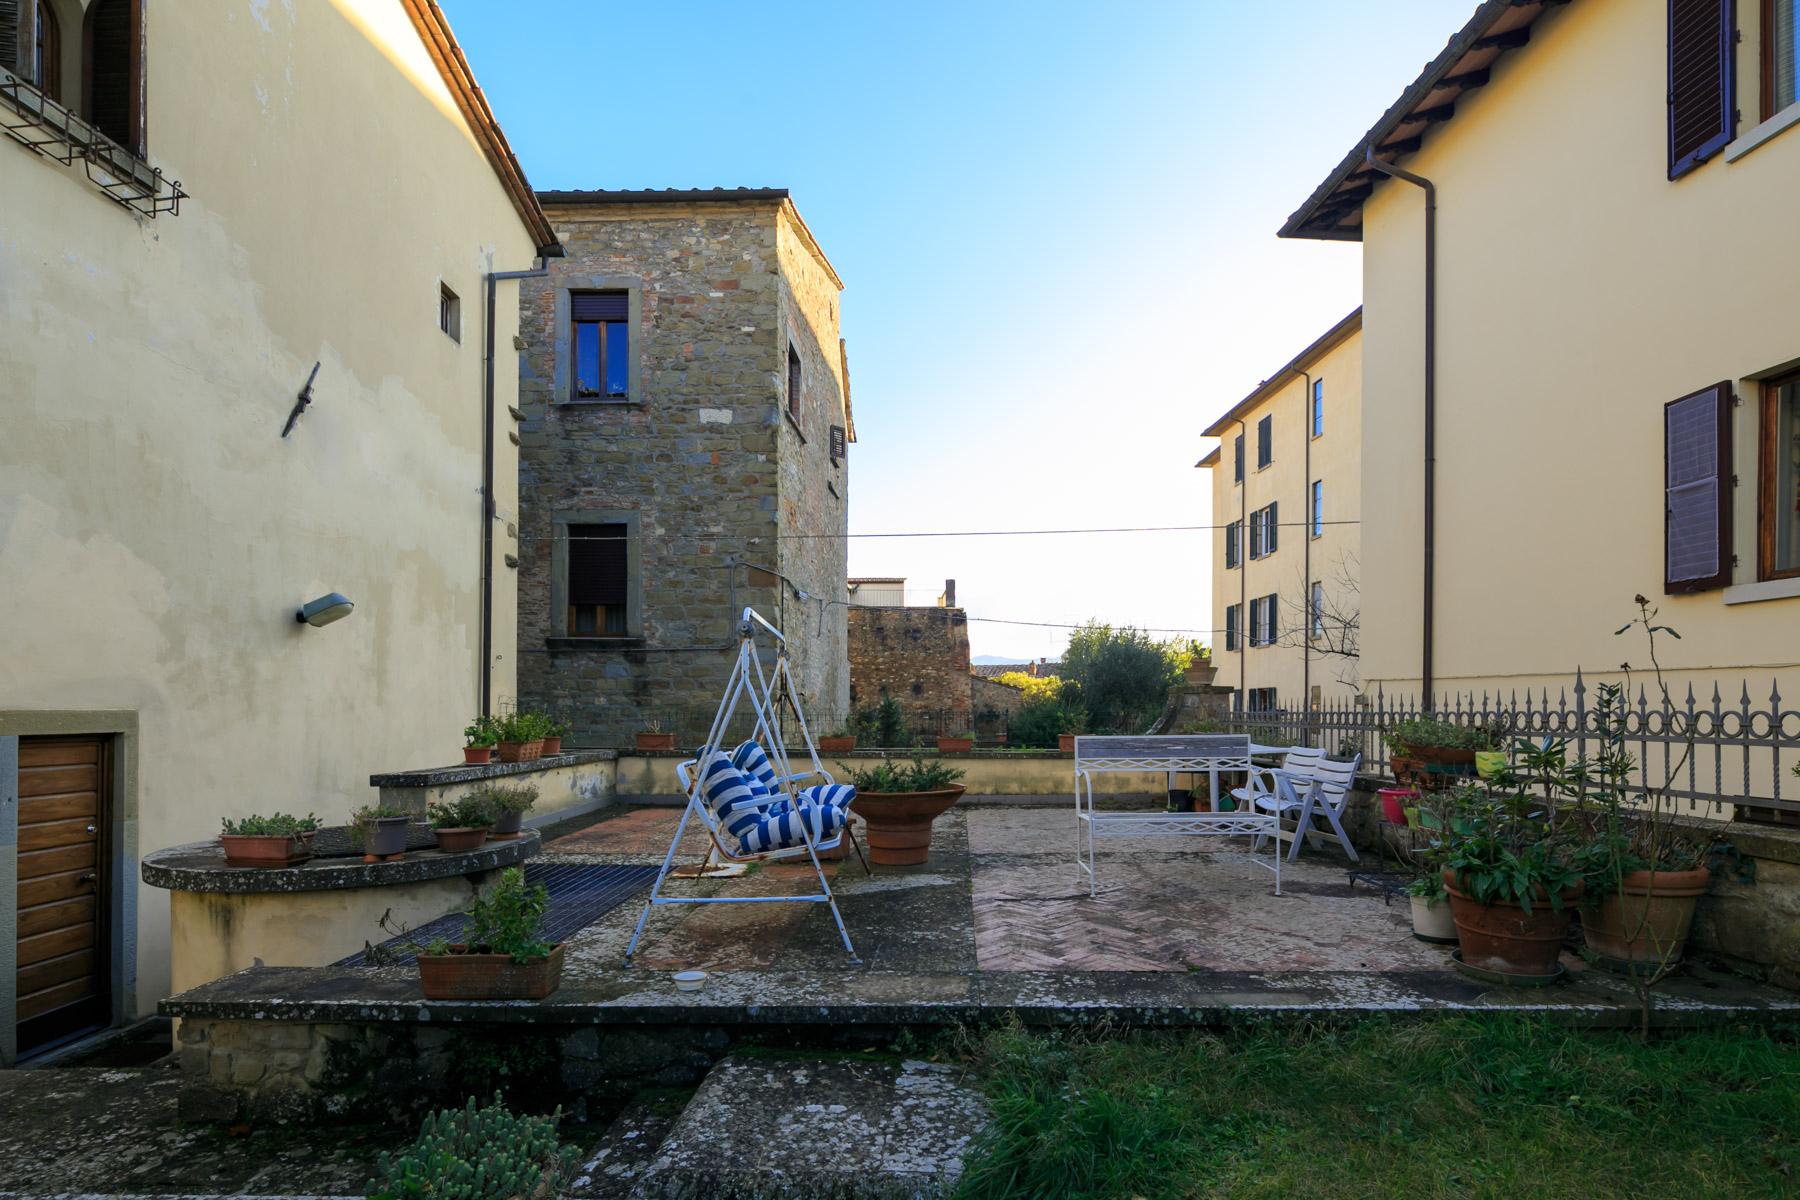 Palazzo Rinascimentale in Vendita a pochi passi da Piazza Grande, Arezzo - 24